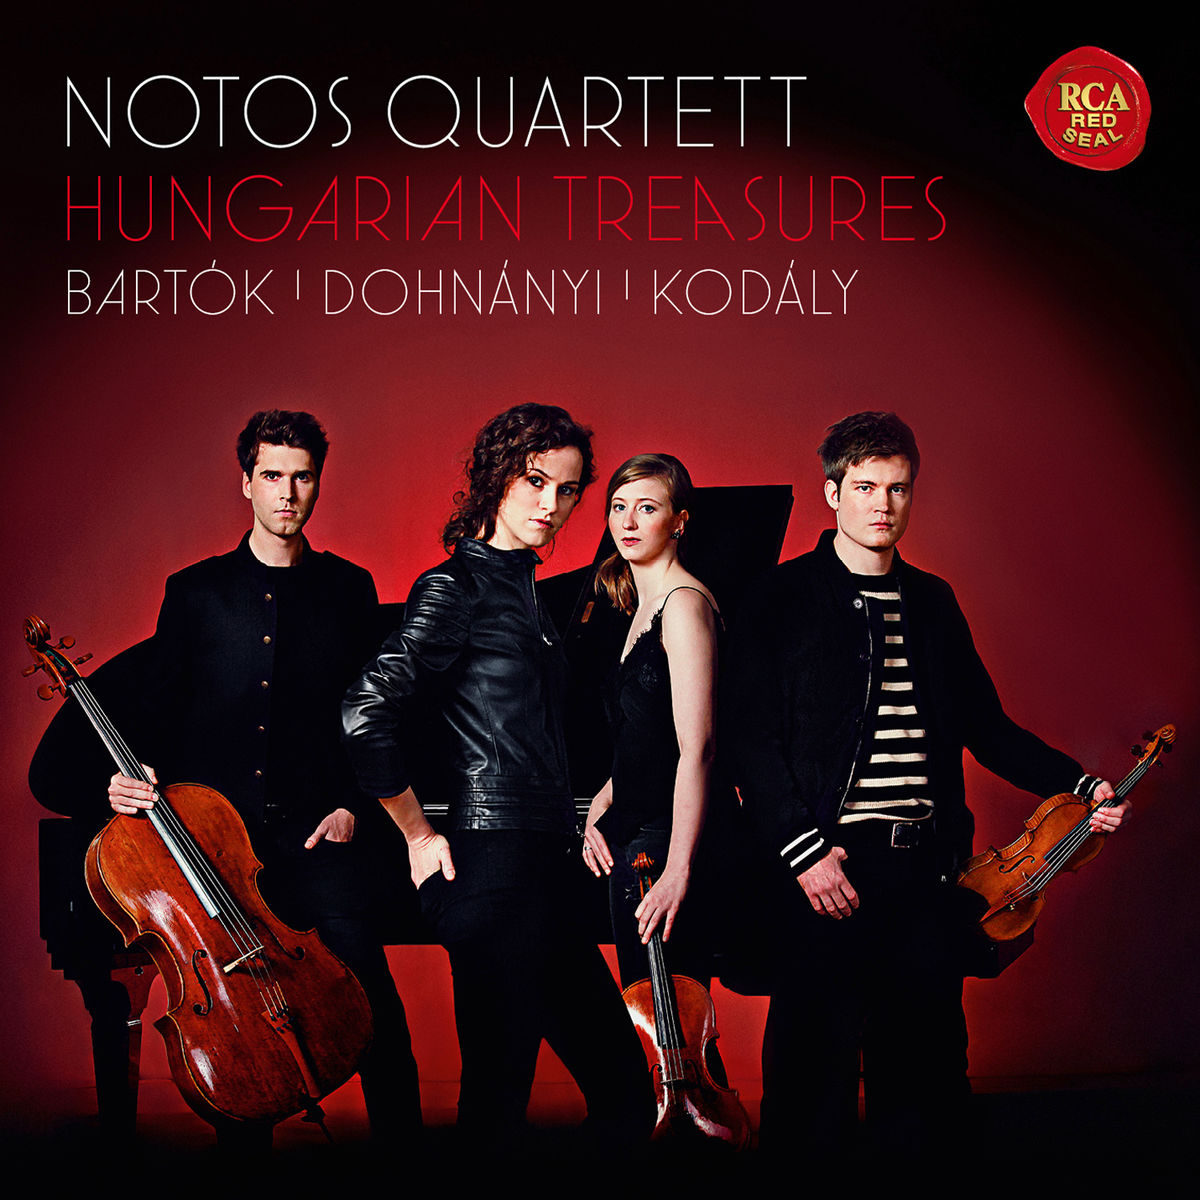 Notos Quartett - Hungarian Treasures - Bartok, Dohnanyi & Kodaly (2017) [Qobuz FLAC 24bit/48kHz]